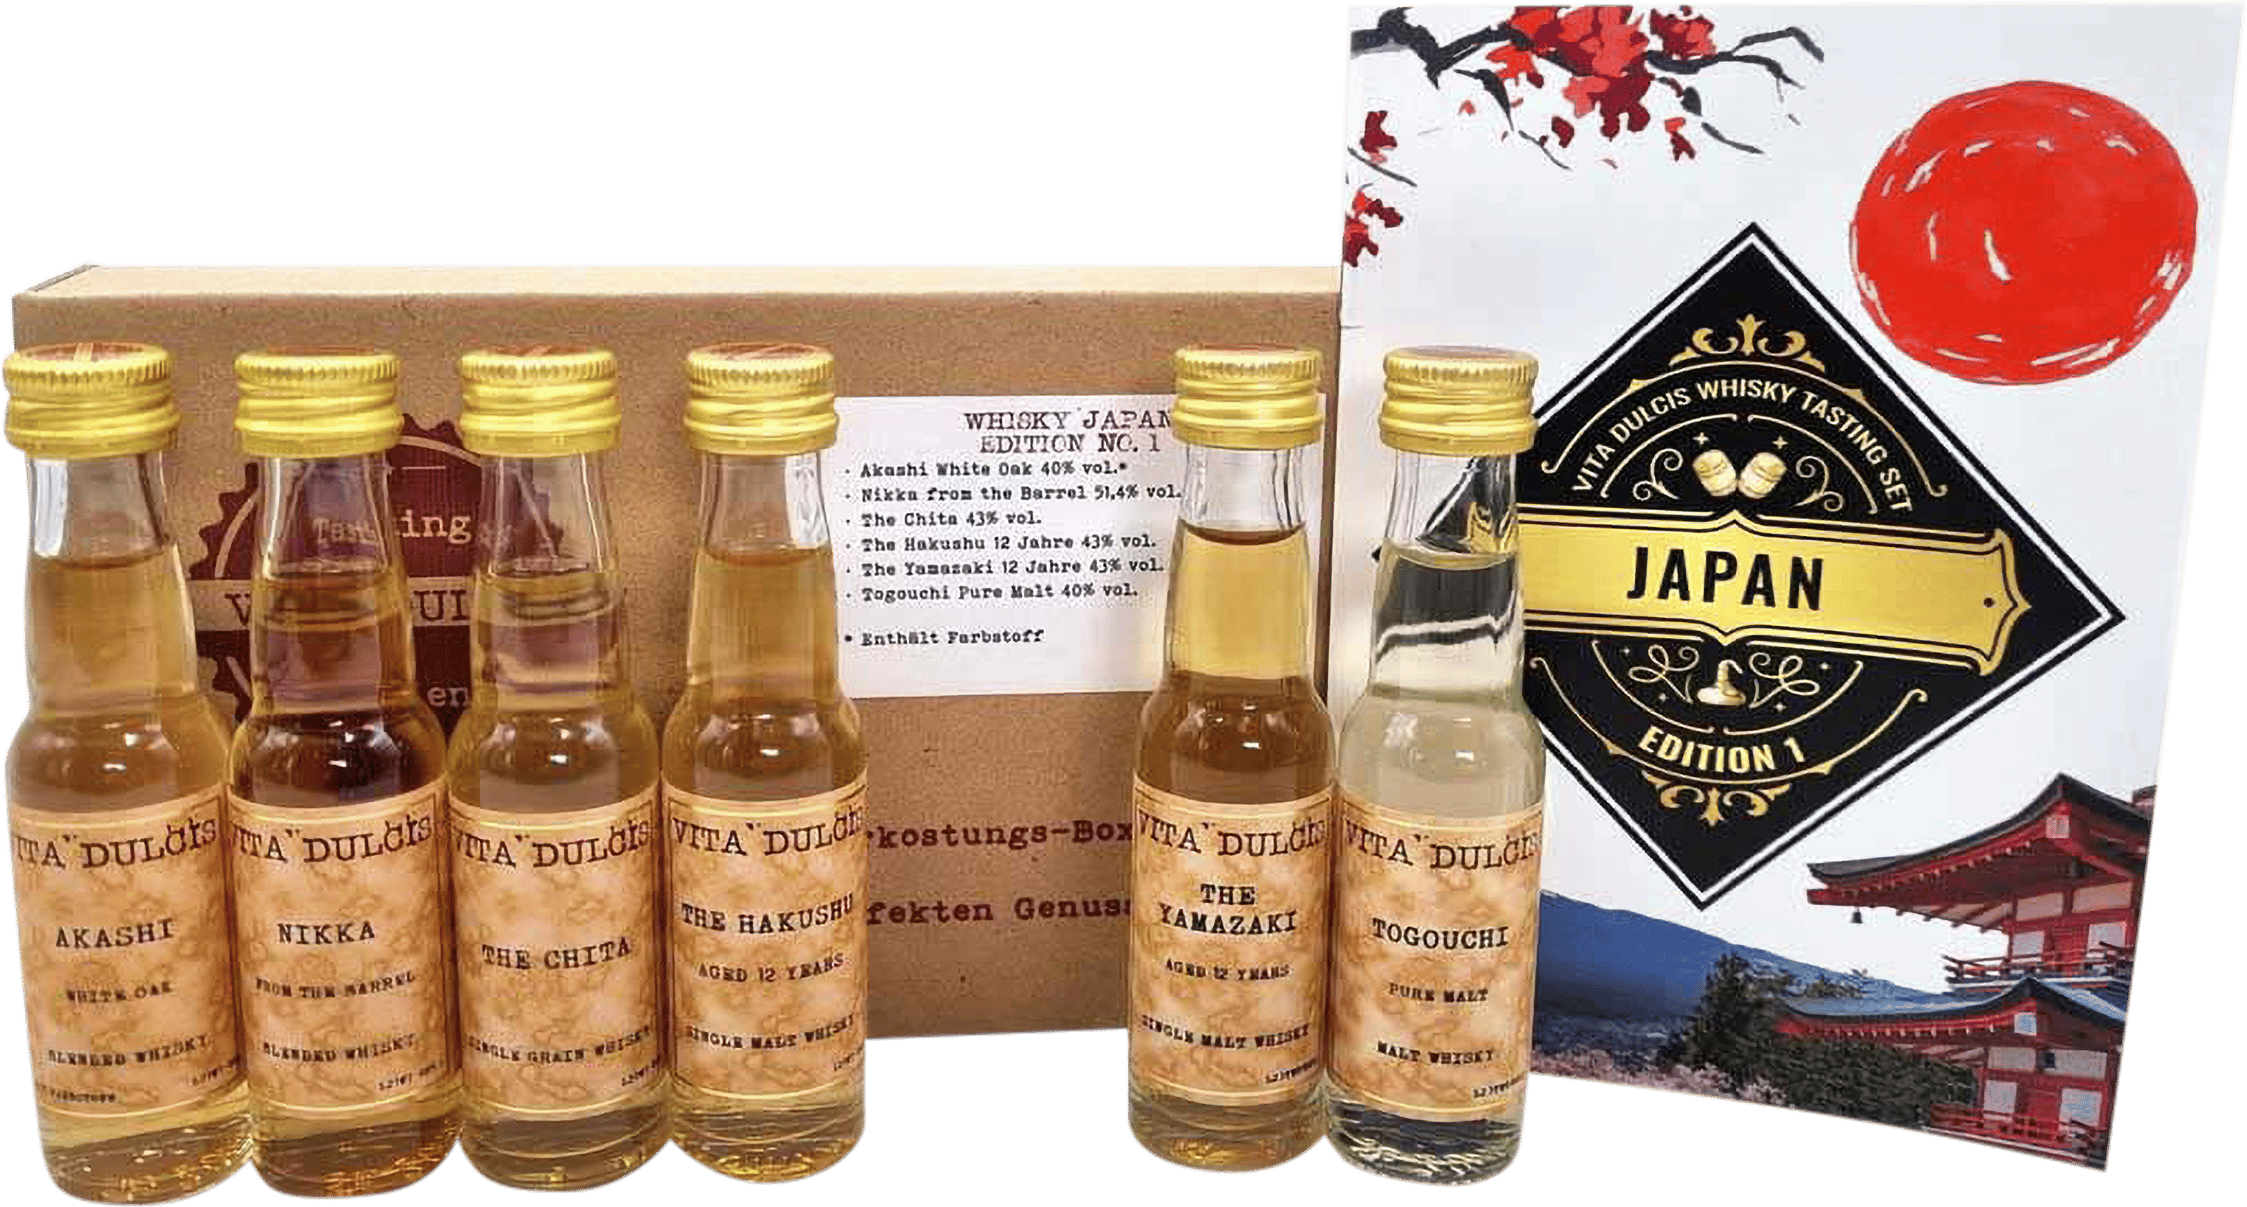 Whisky Tasting Box | Honest Japan kaufen Rare 